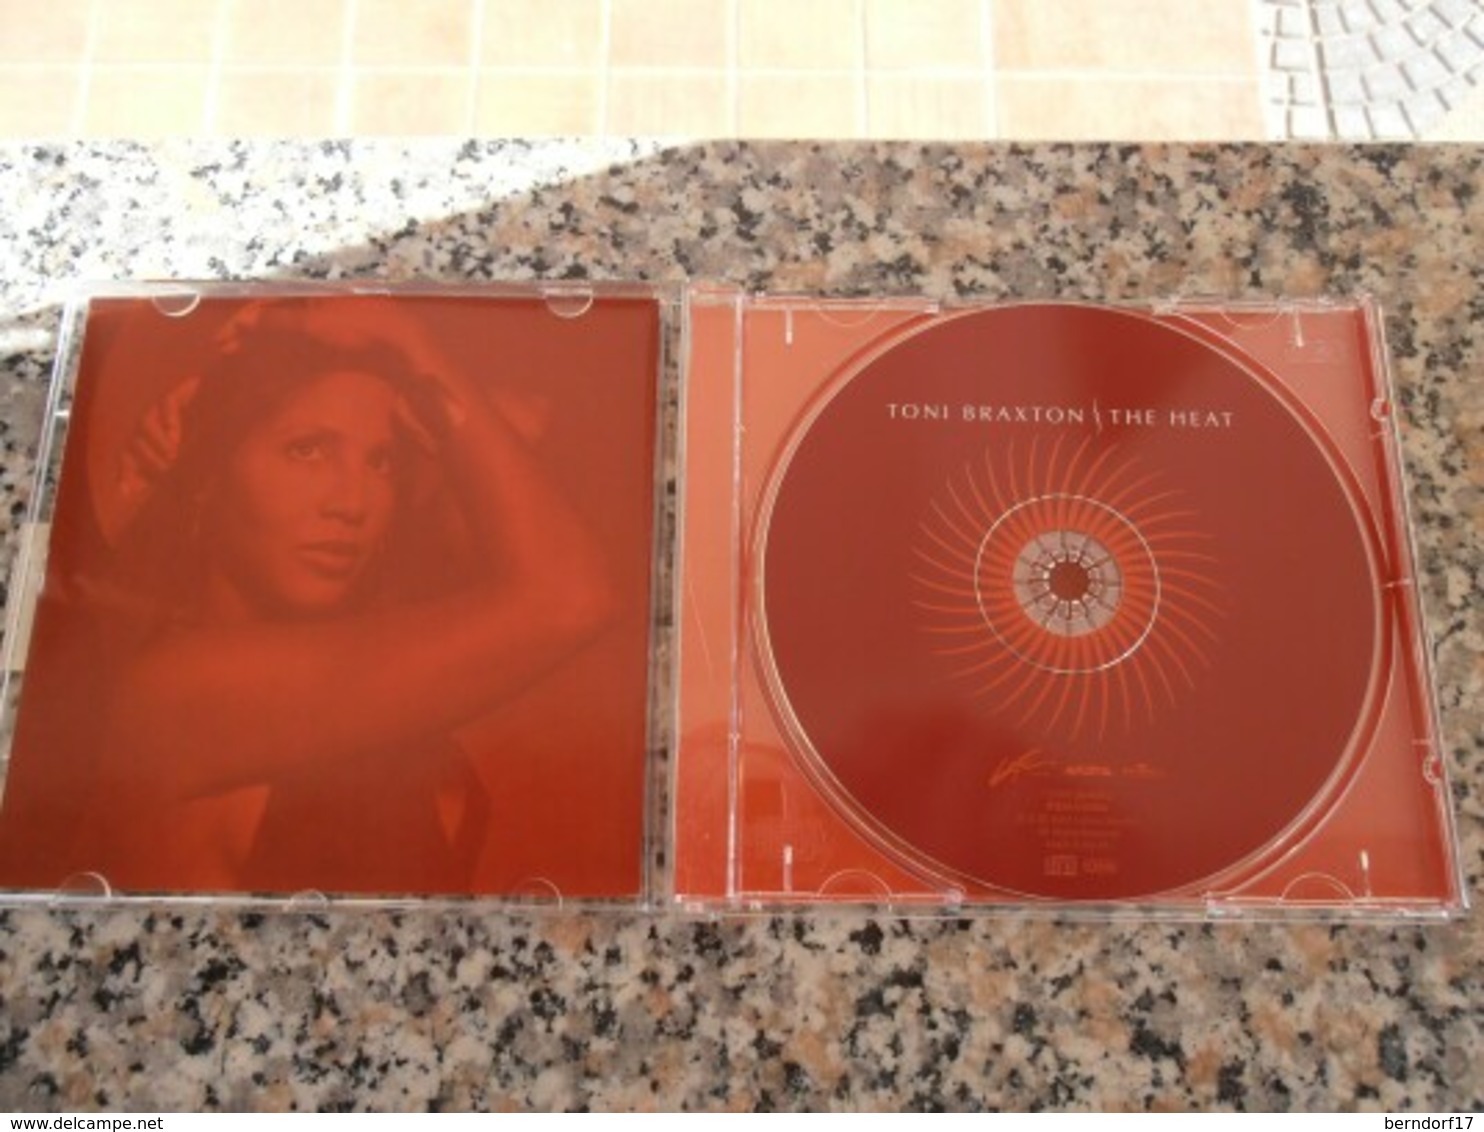 Toni Braxton - The Heat - CD - Soul - R&B